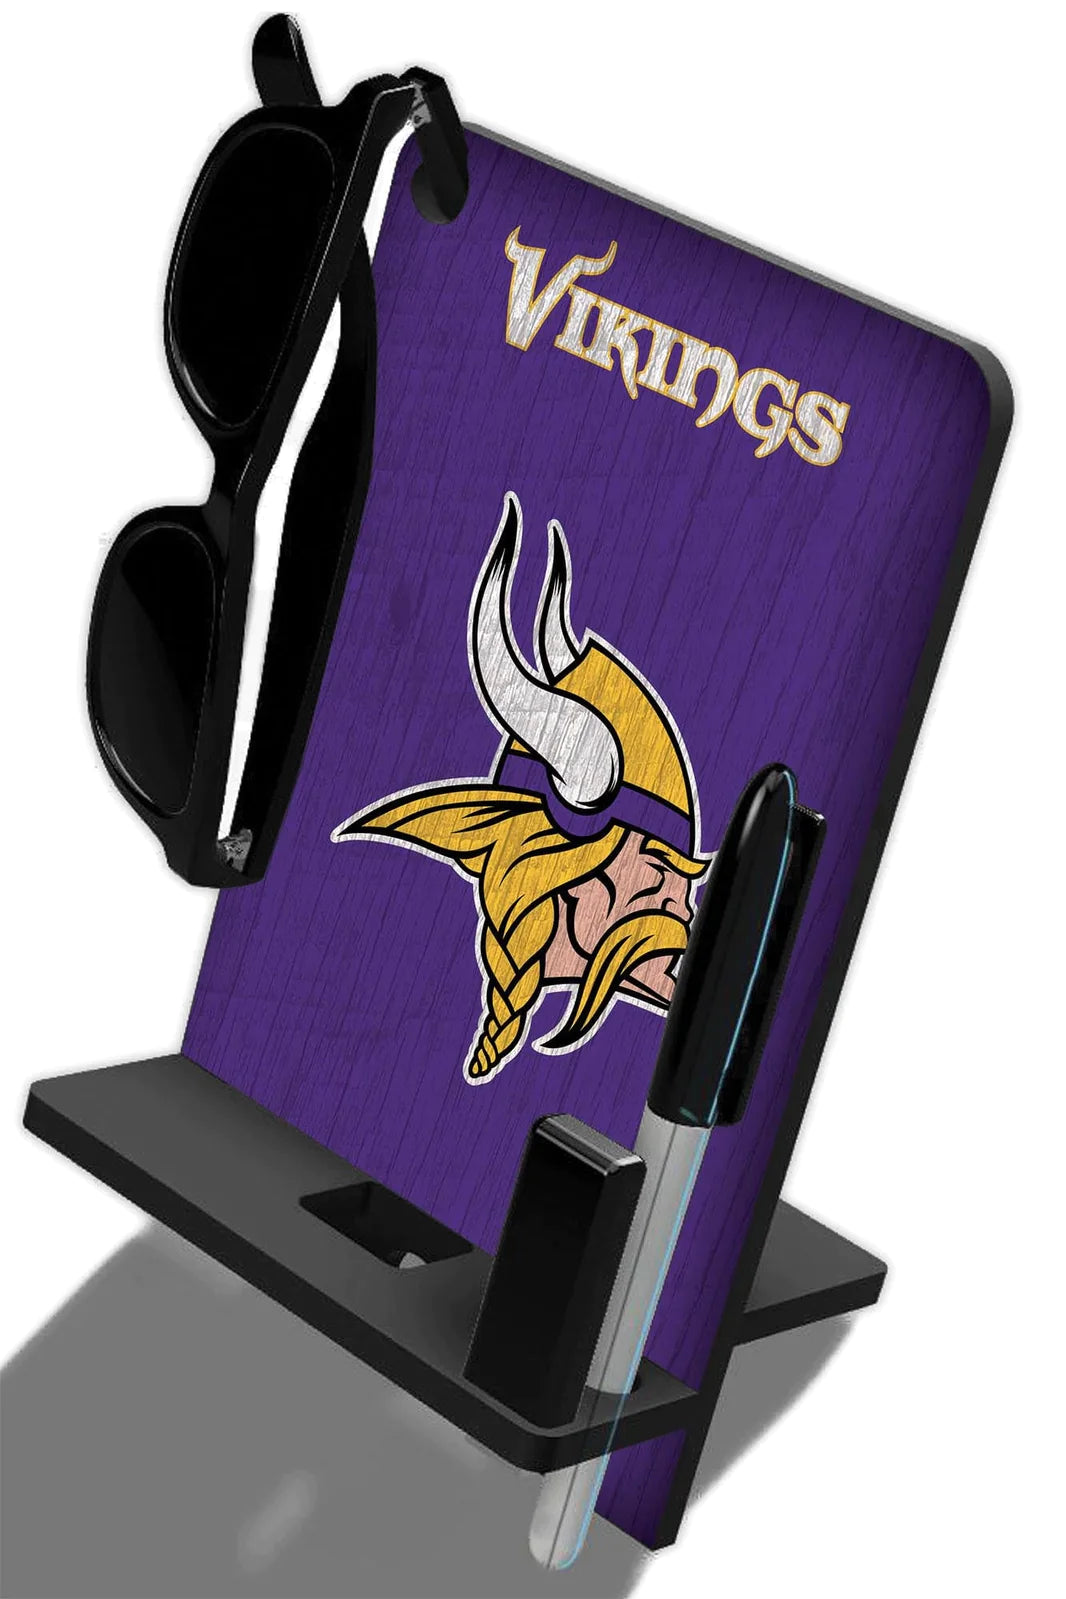 Base de escritorio para Celular Phone Stand NFL Vikings